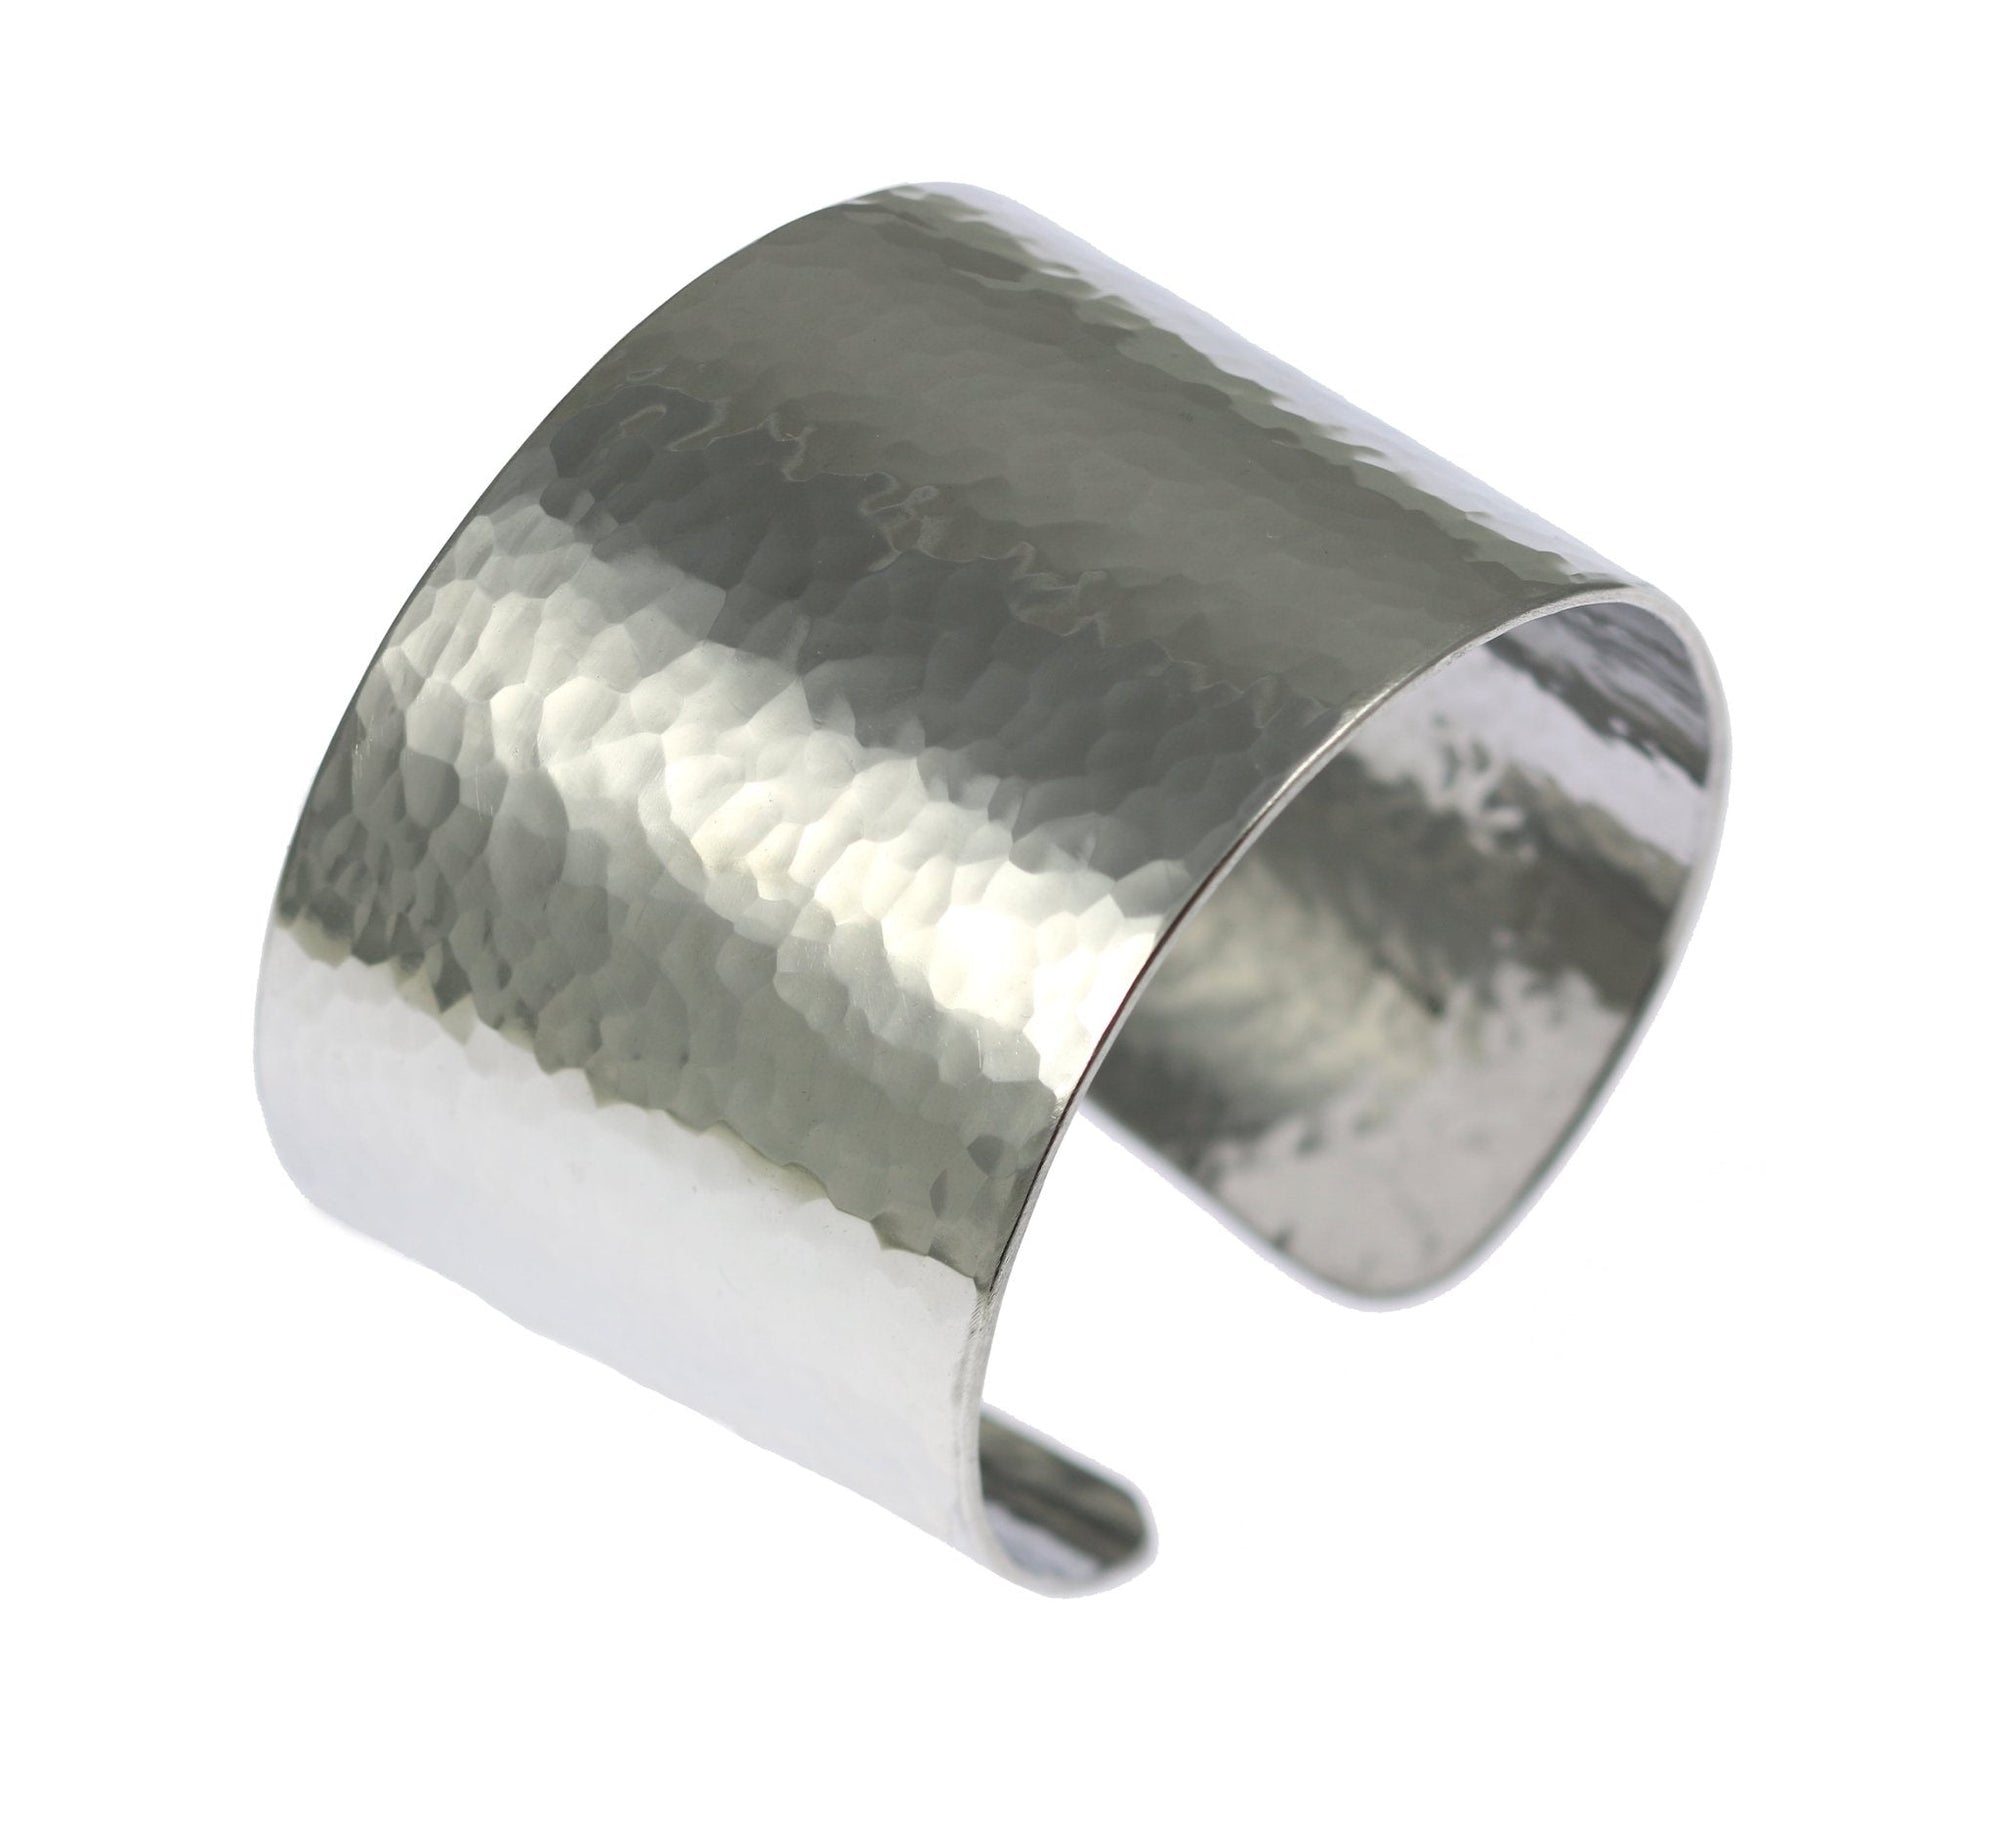 Hammered Aluminum Cuff Bracelet